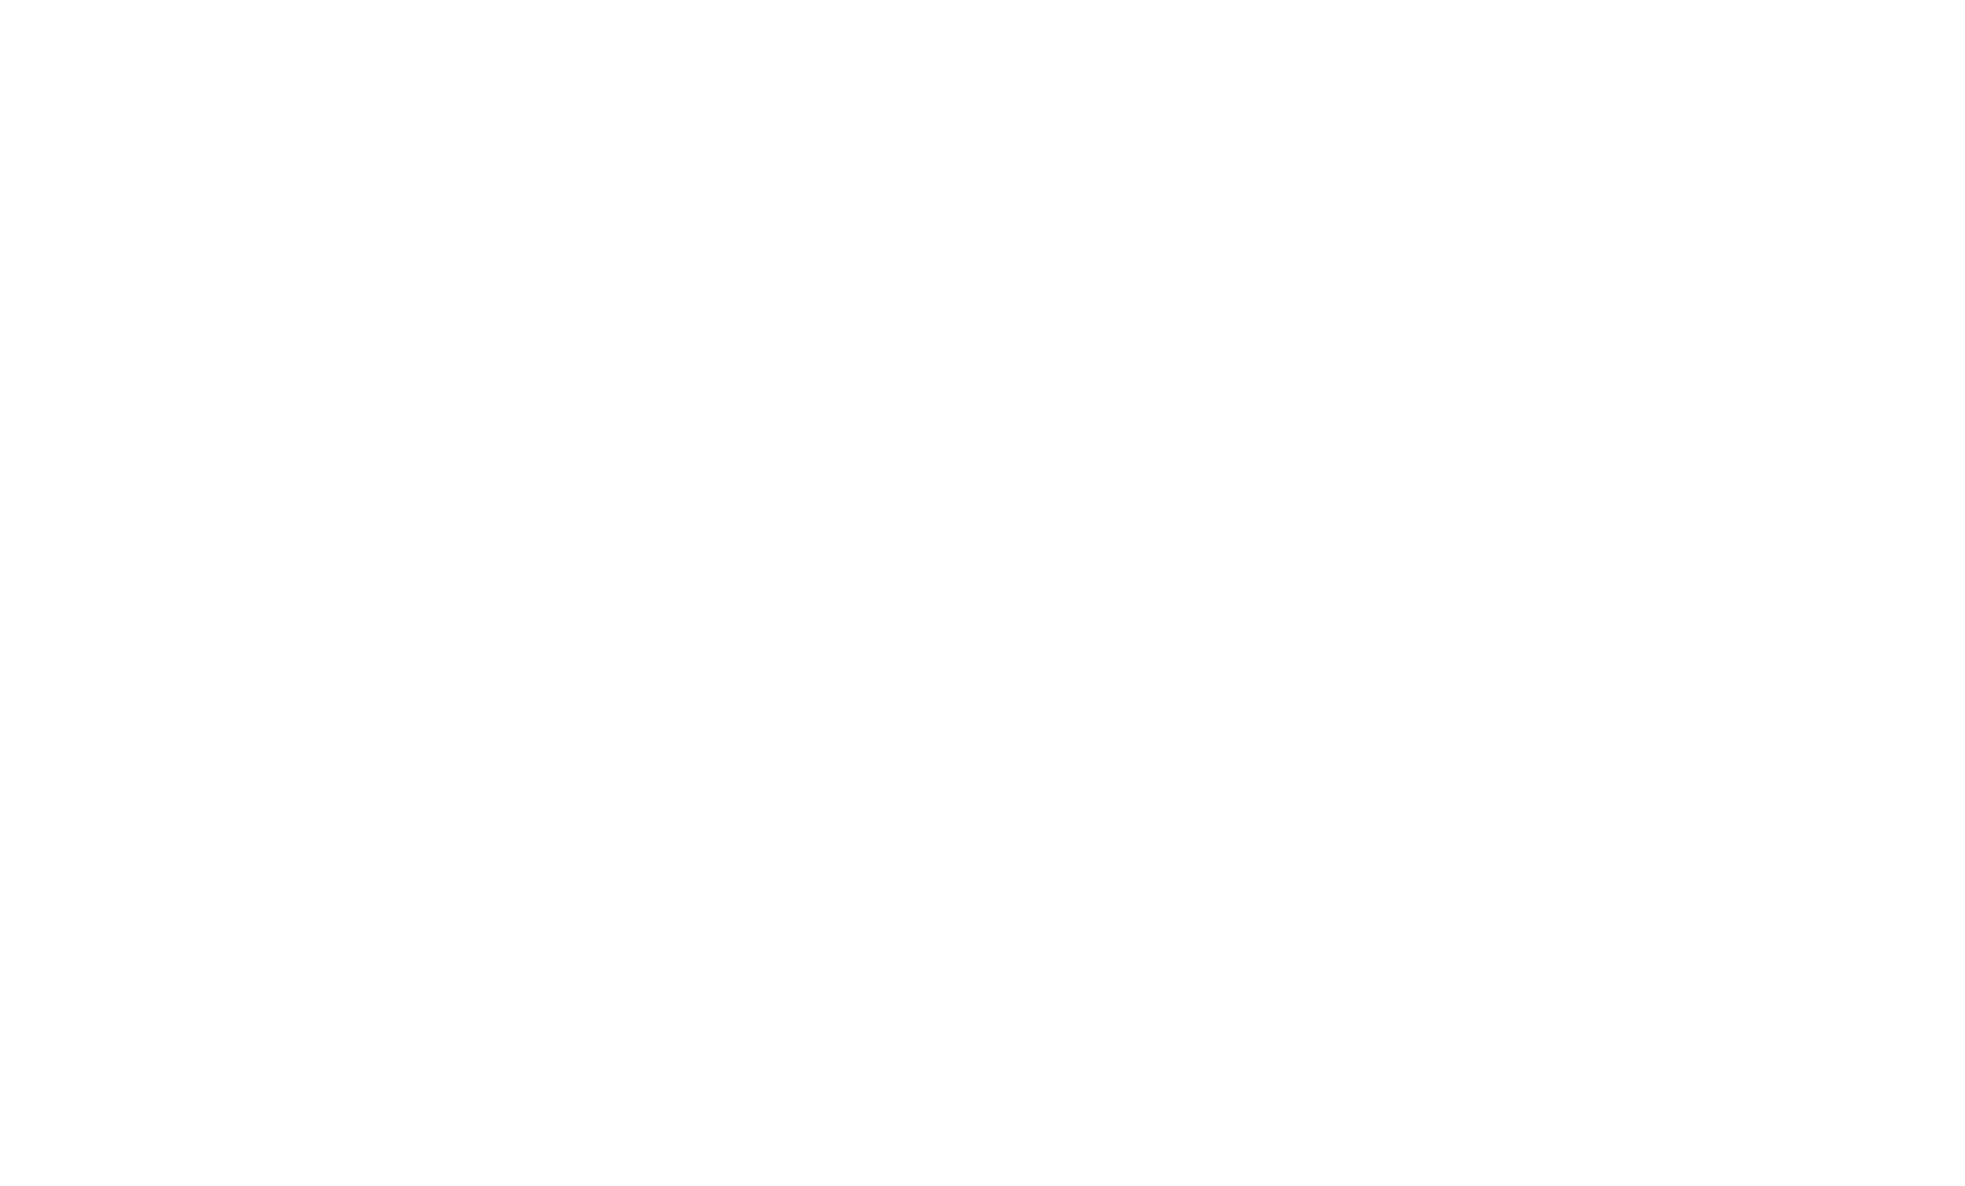 No Bears logo